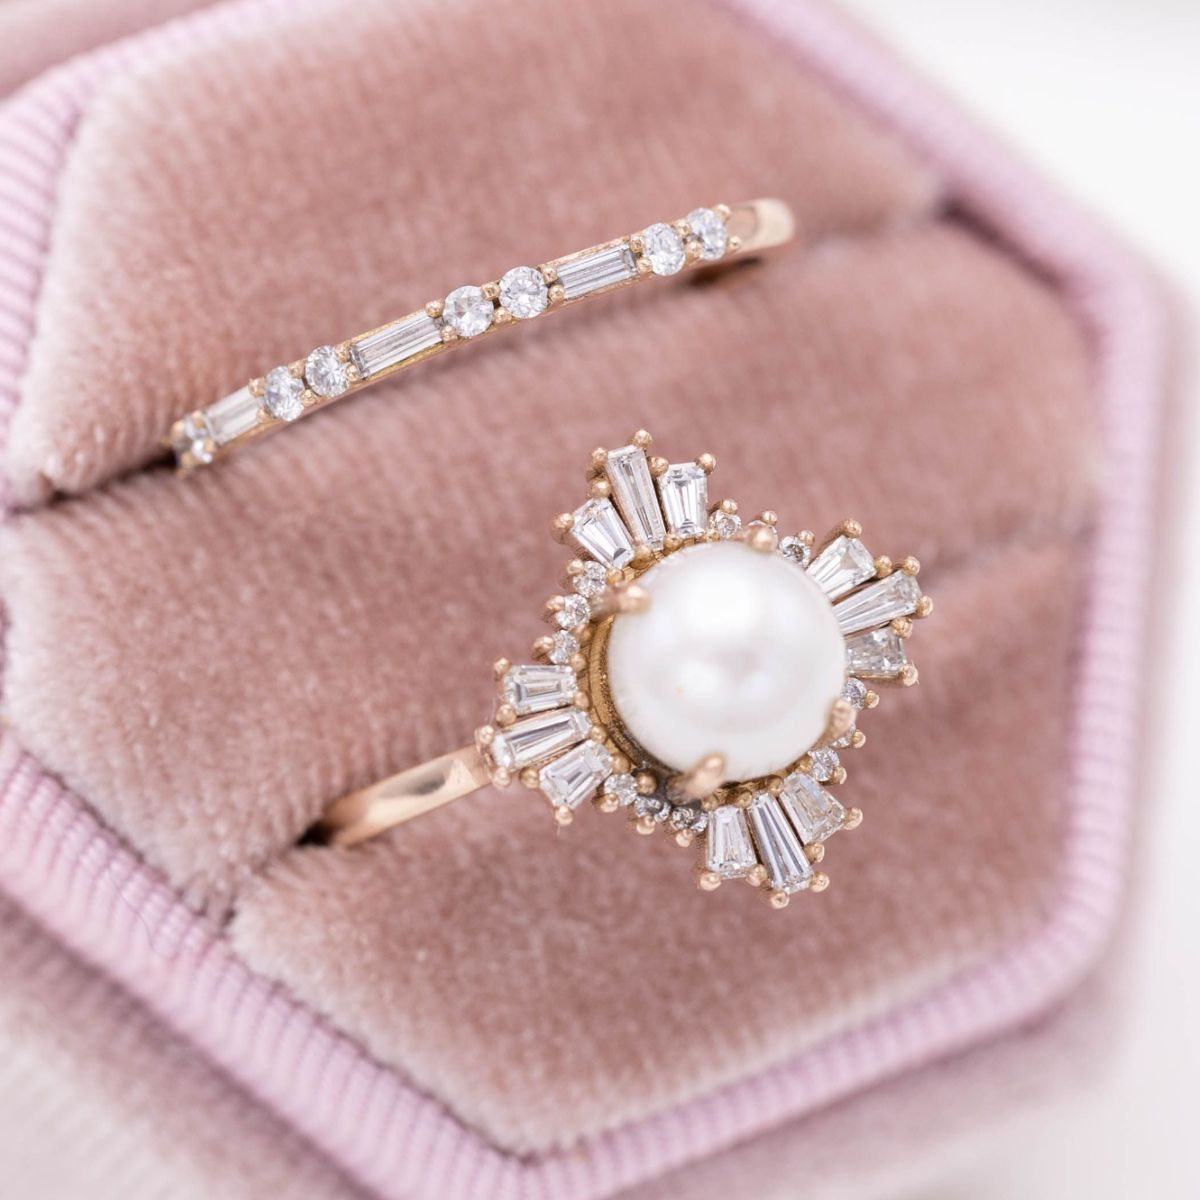 Designer Rings for Women - Fine Jewelry Rings - Christmas